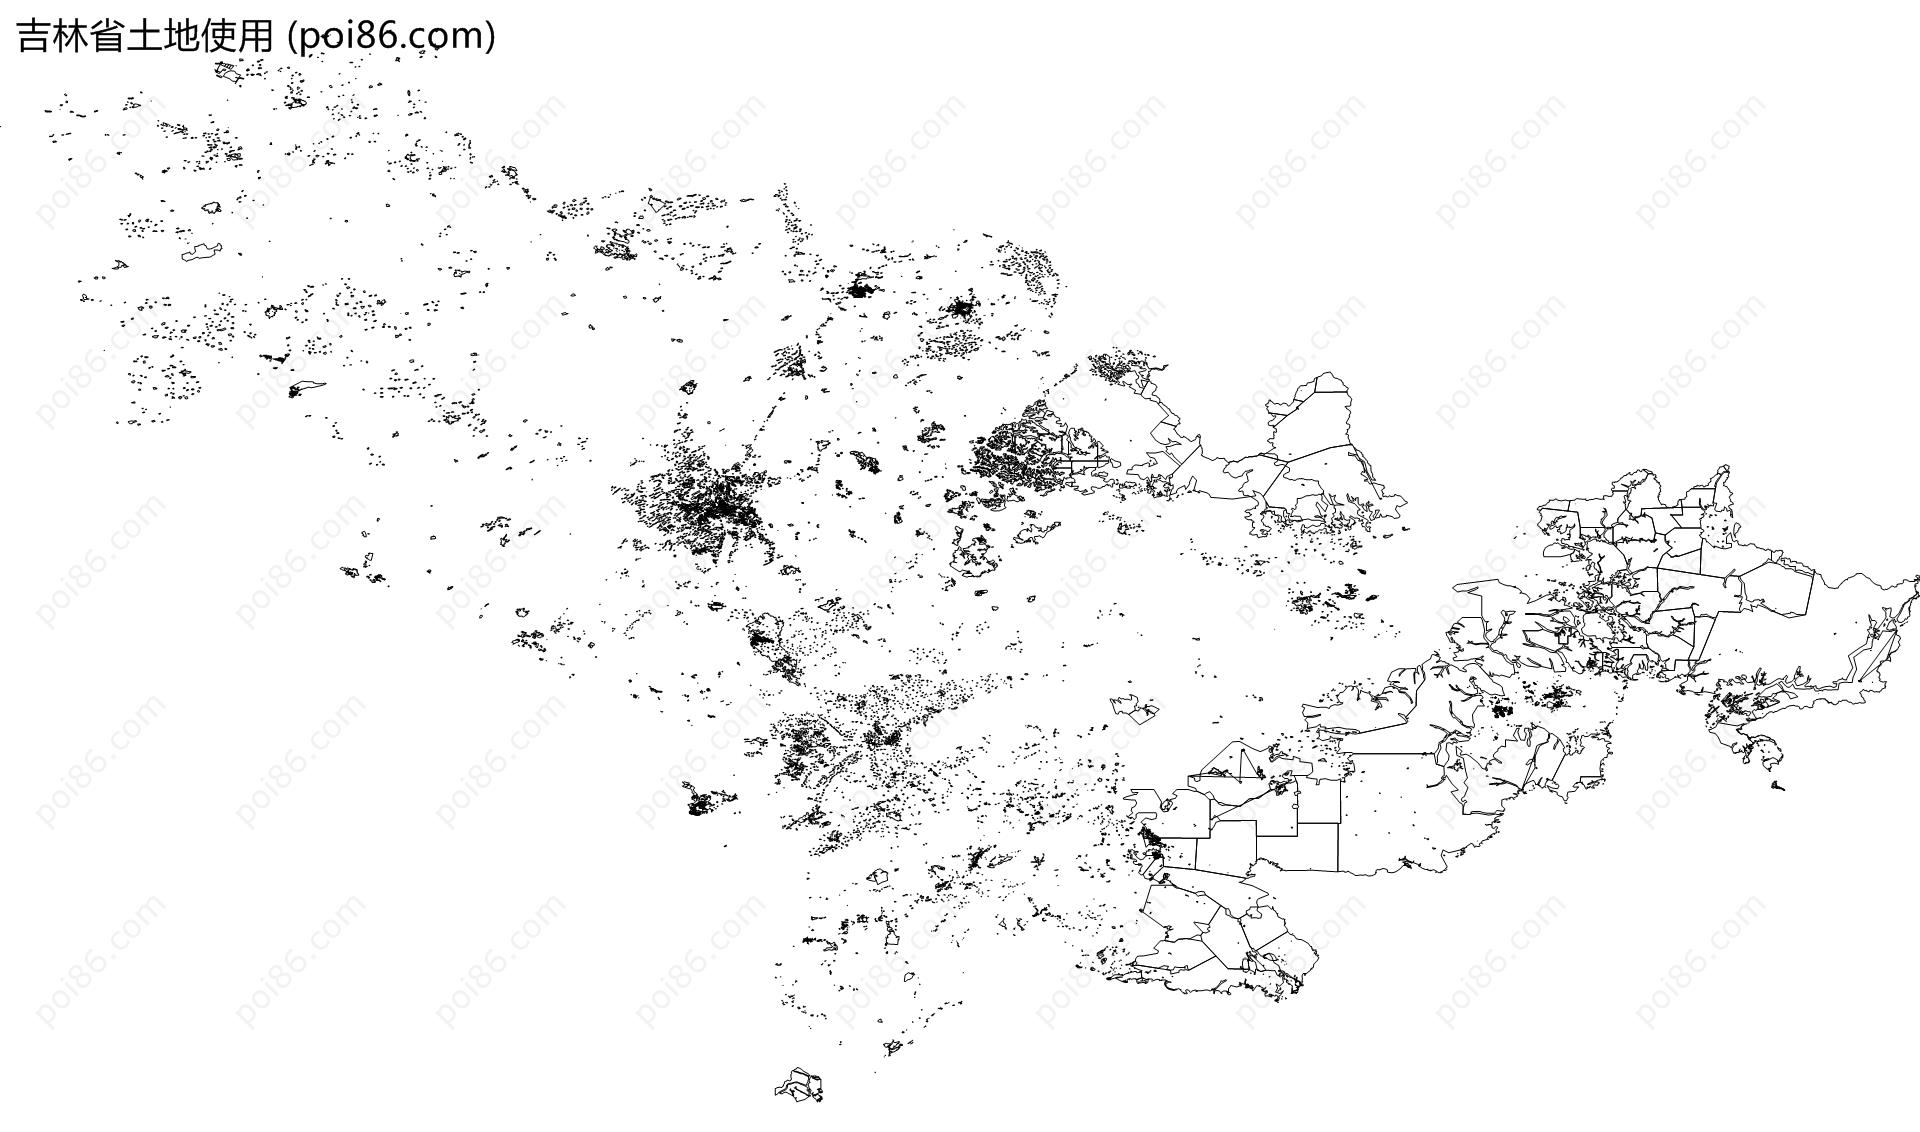 吉林省土地使用地图